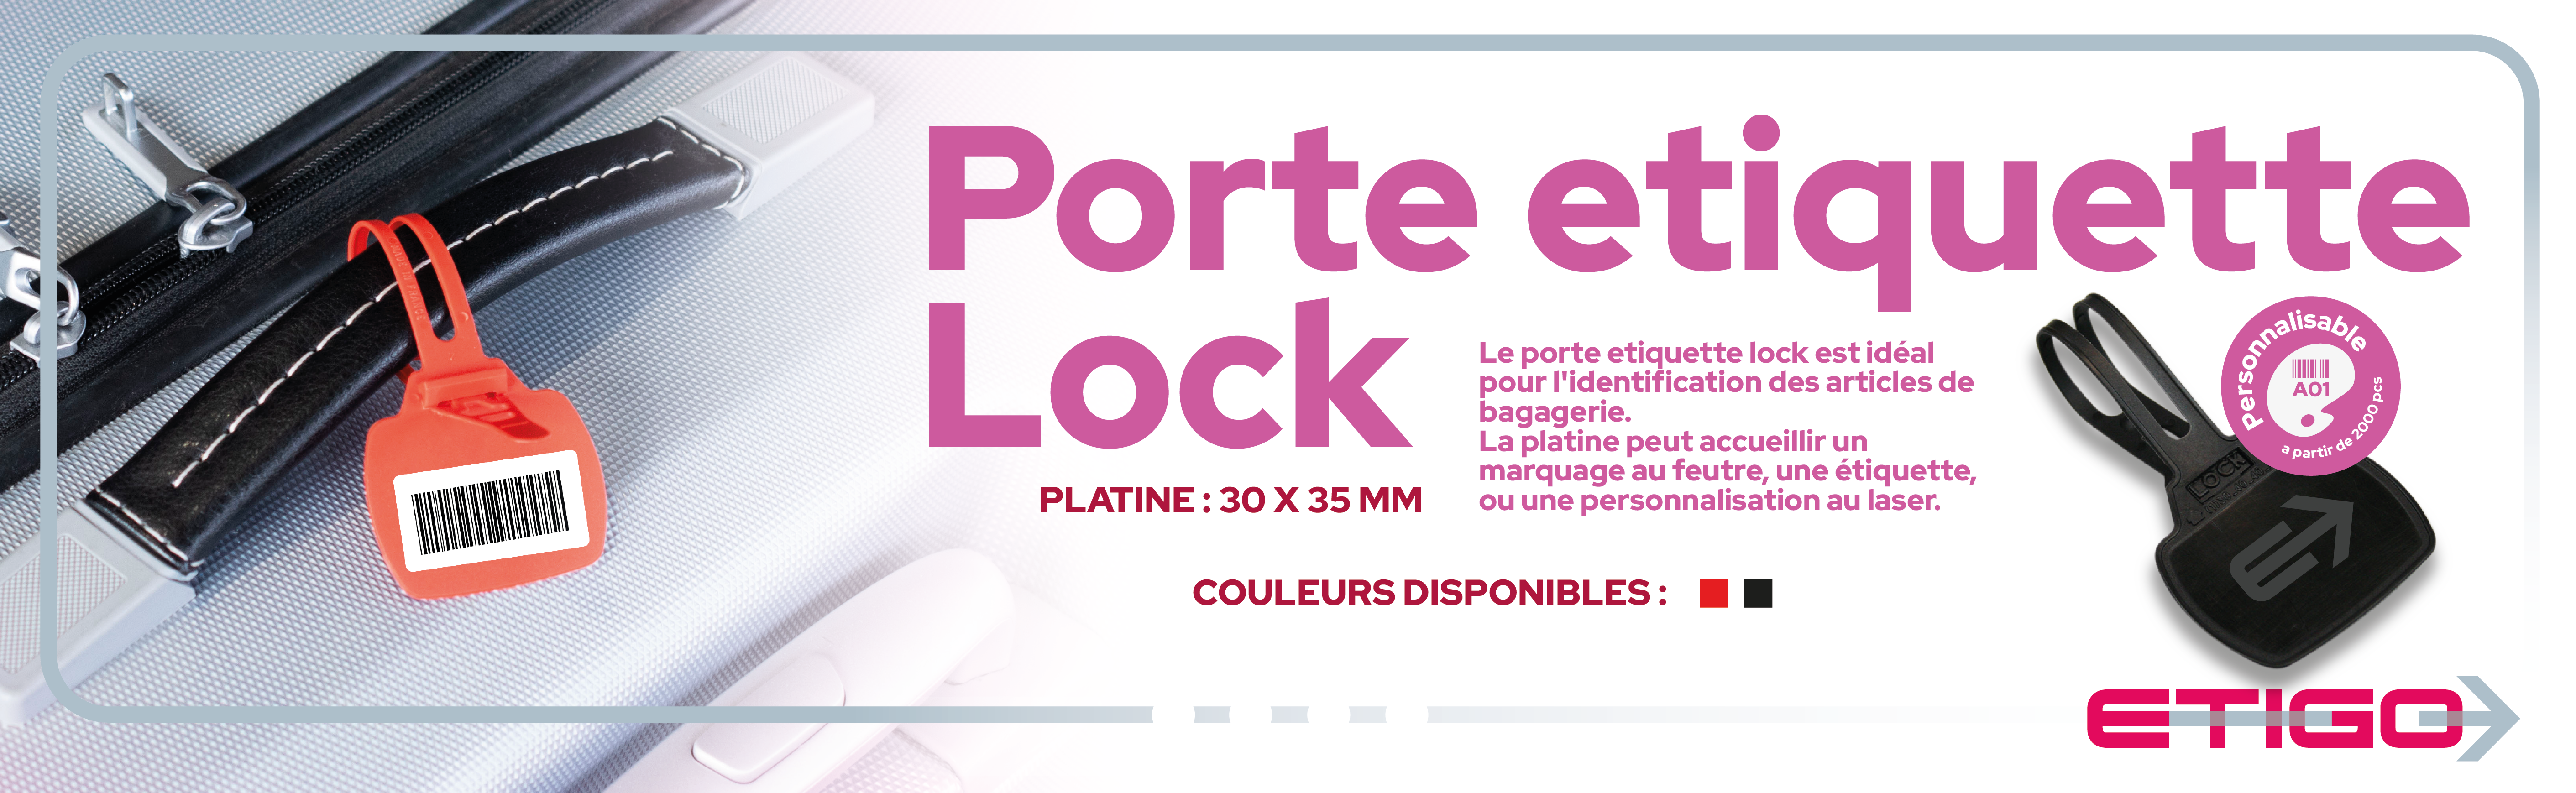 porte_etiquette_lock